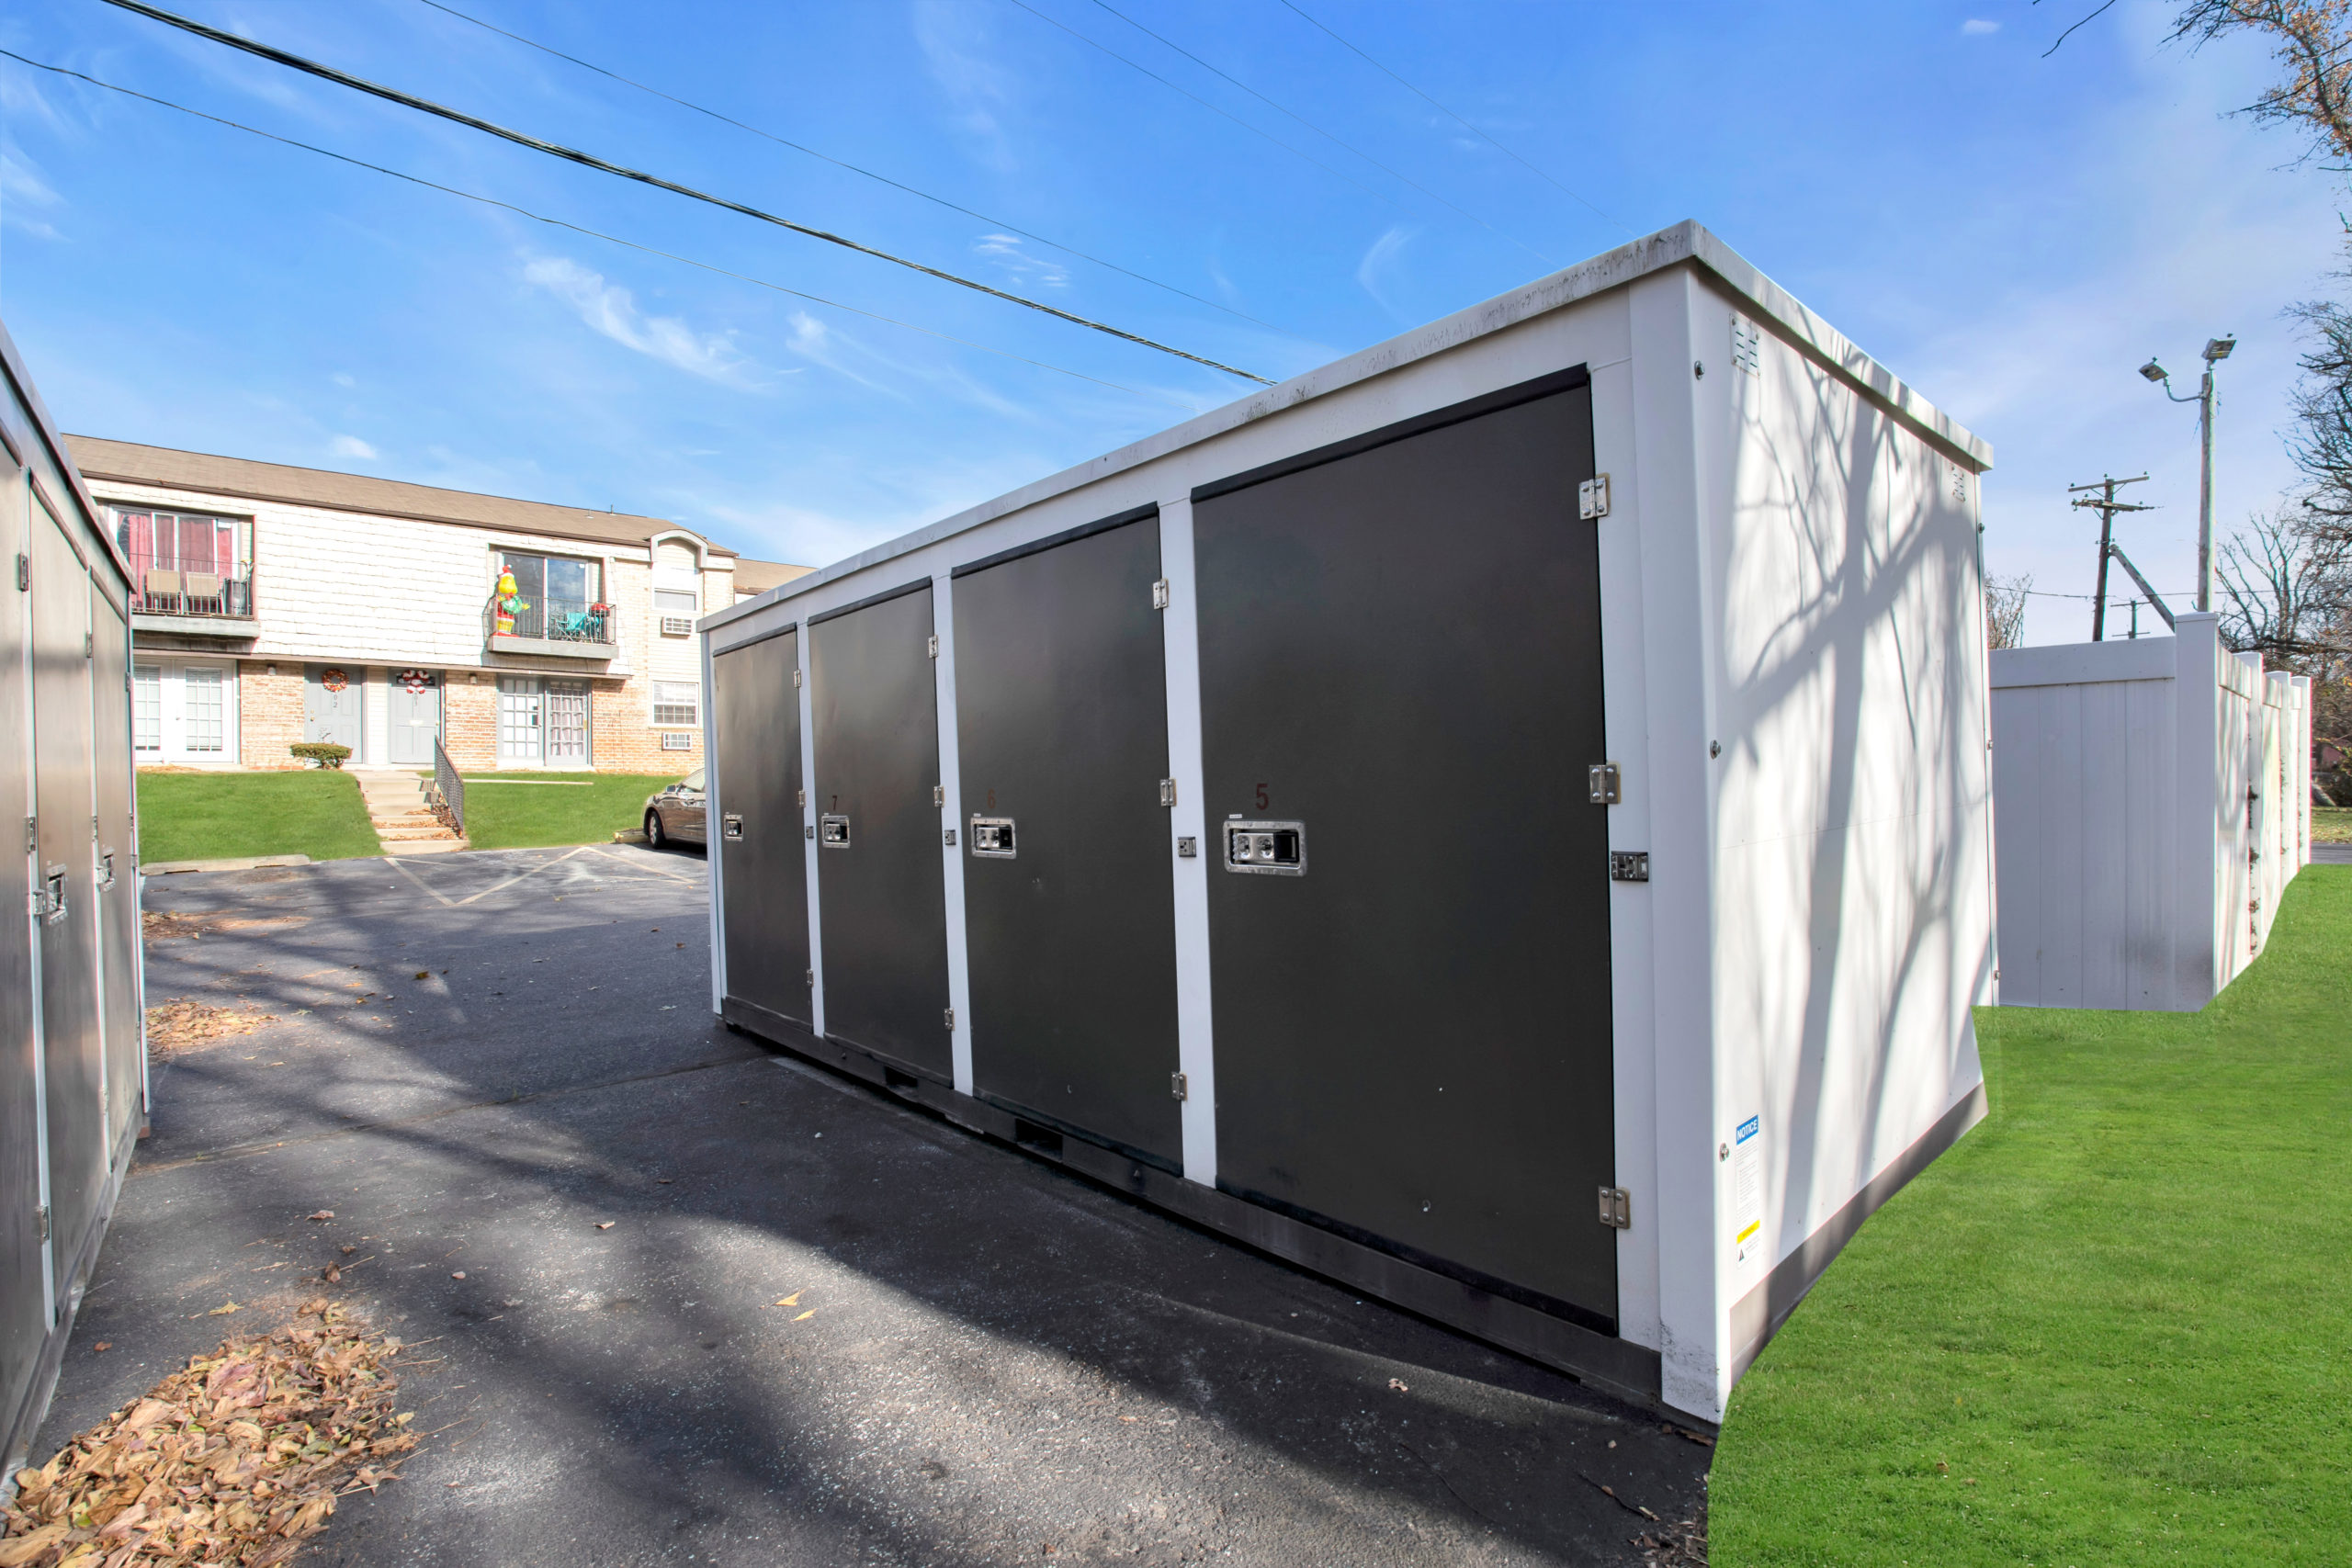 outdoor storage units - max space storage - storage units - black storage units